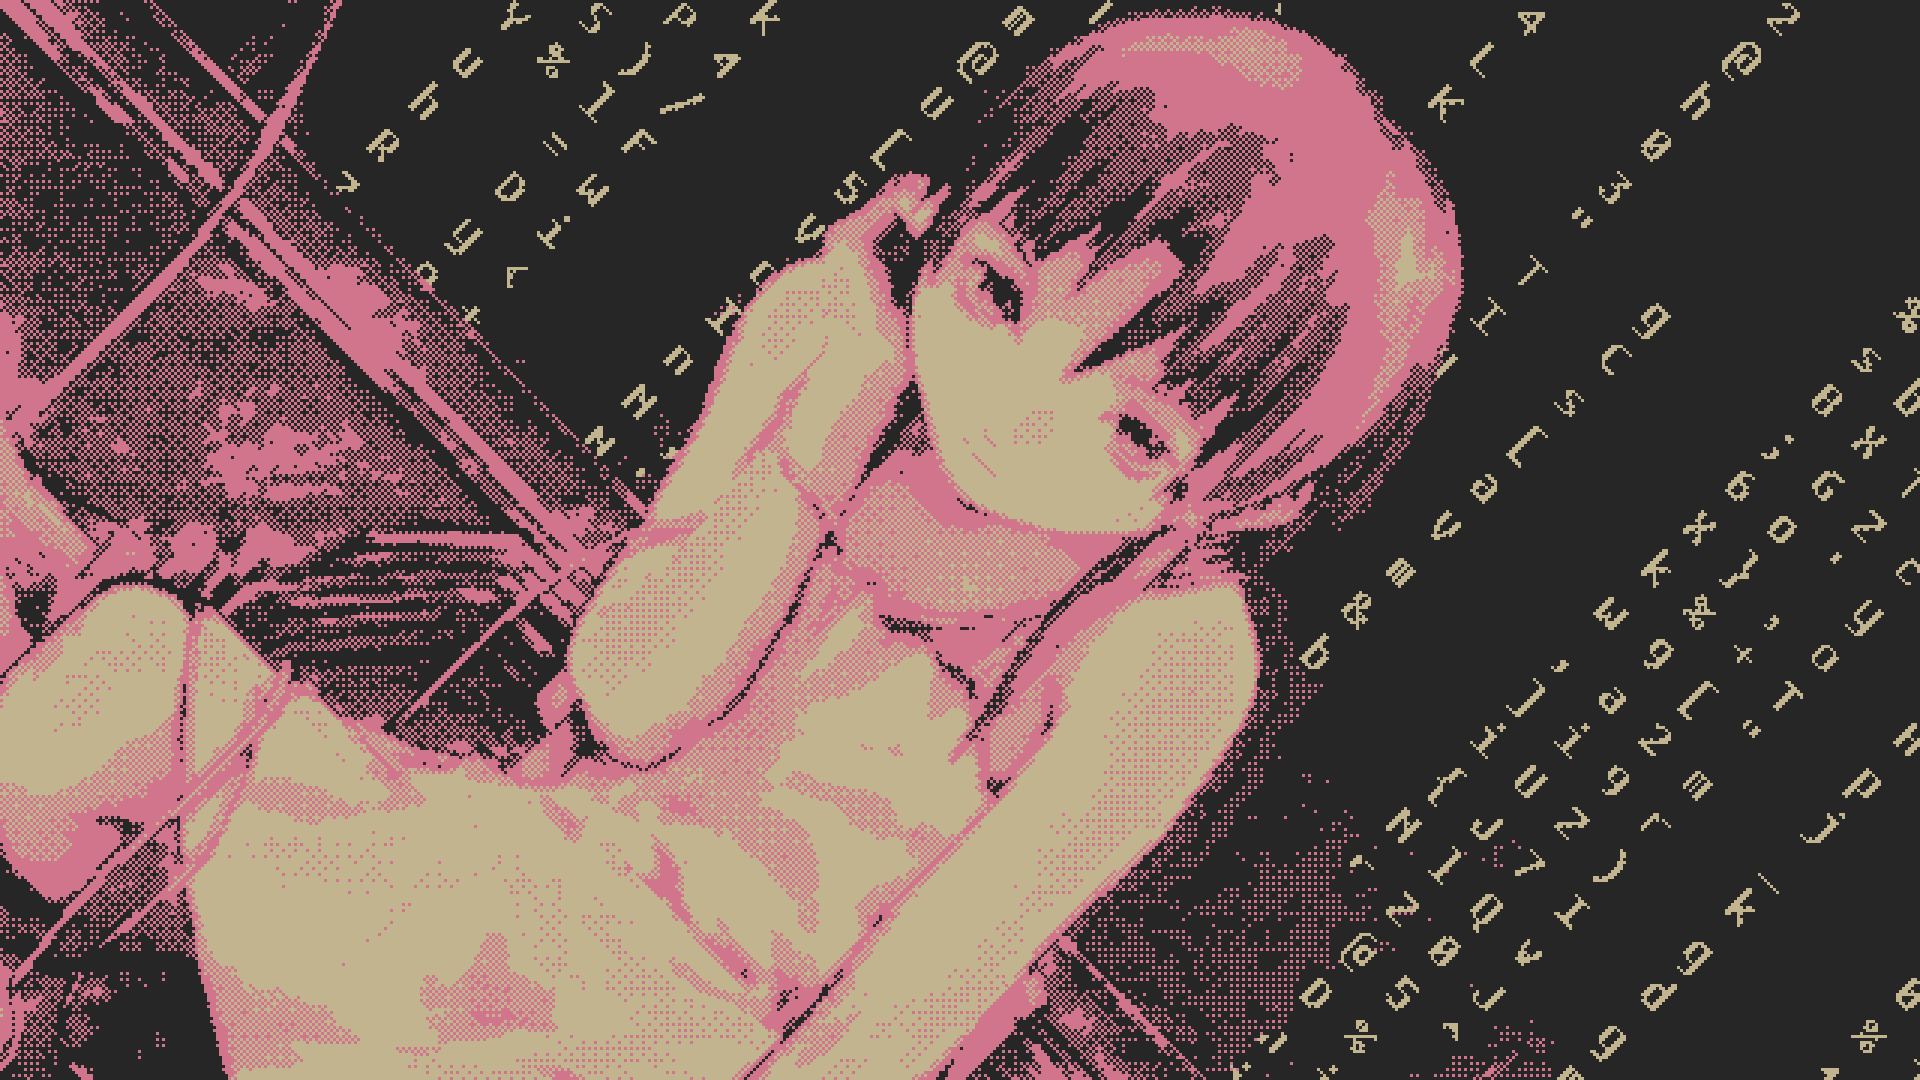 Lain Iwakura Pixel Art 1920x1080